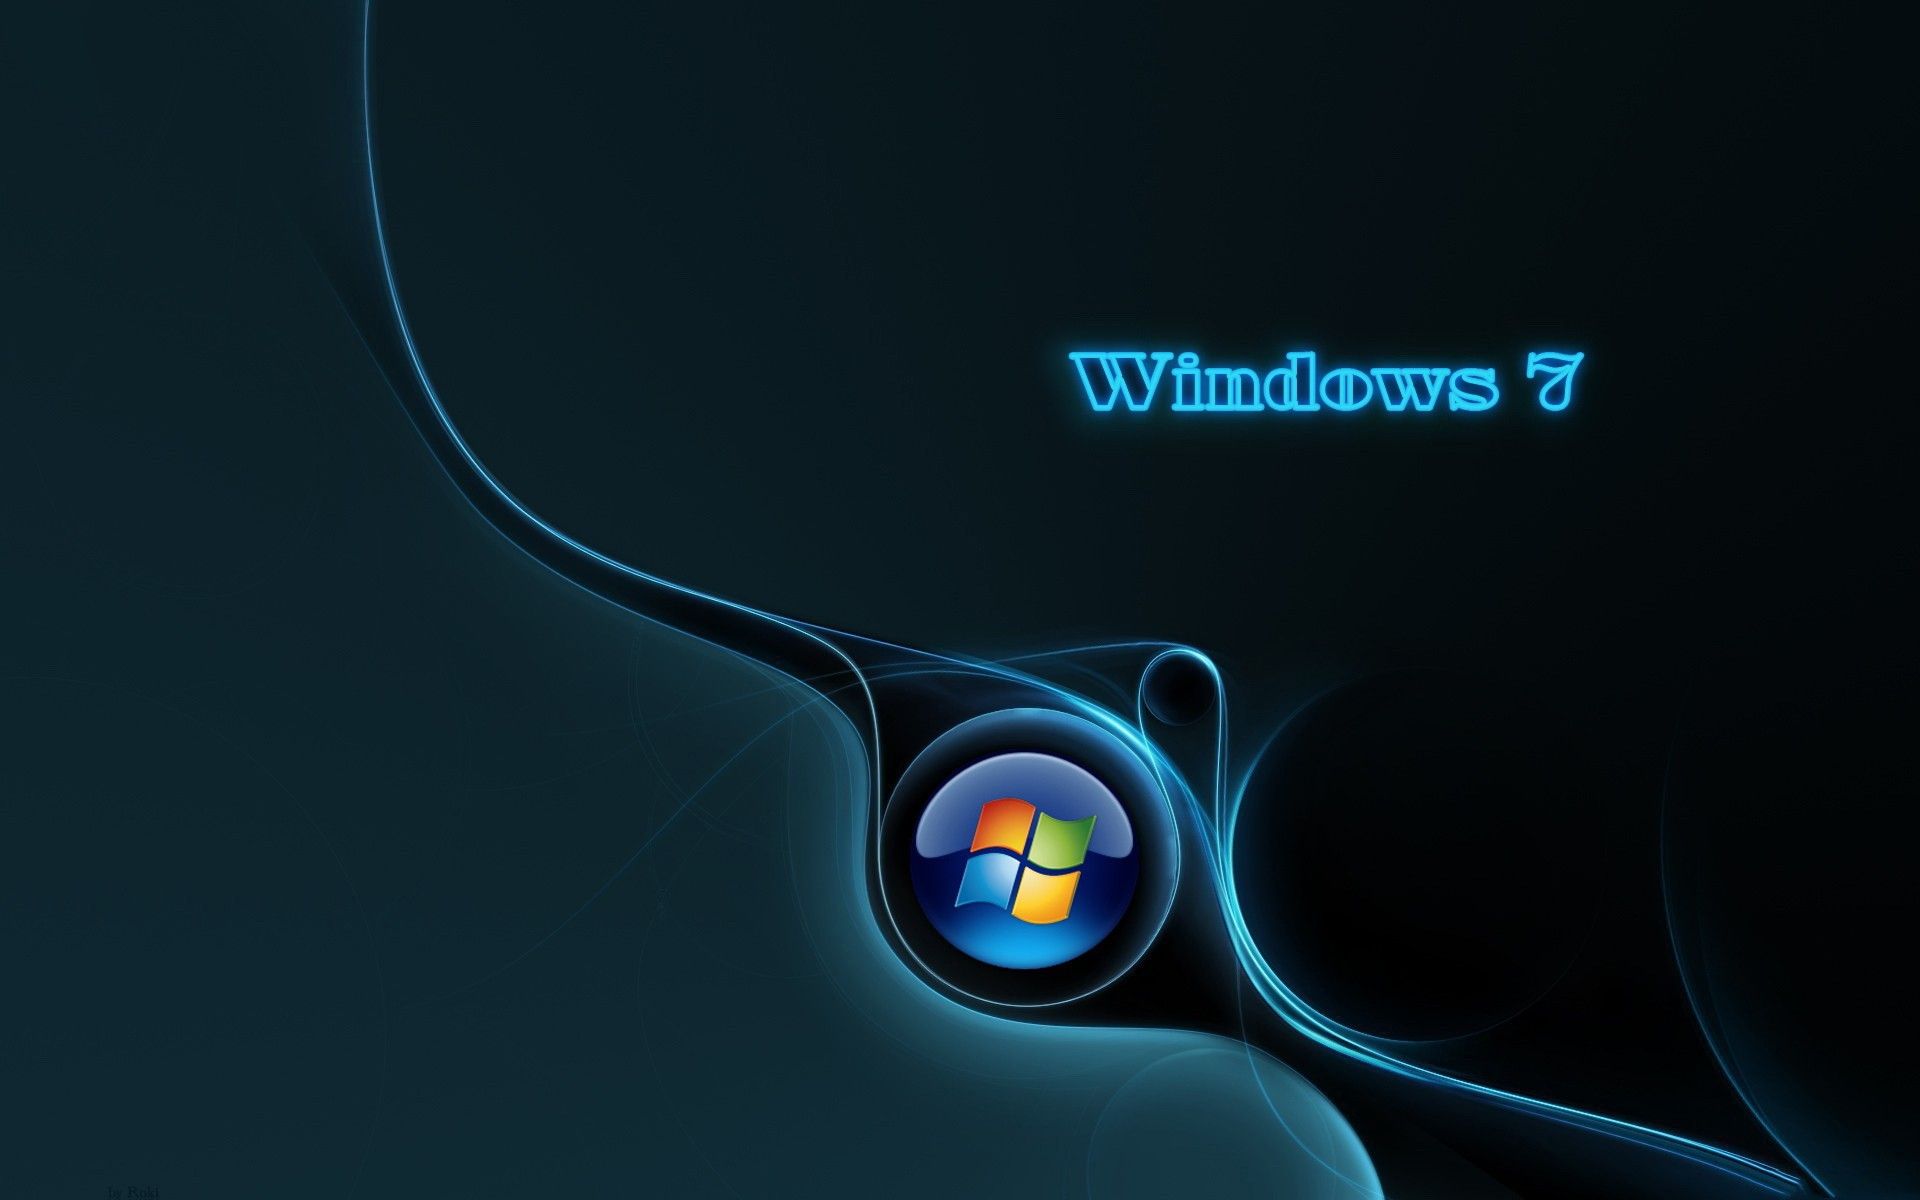 Windows 7 fondos de pantalla, imágenes, imágenes